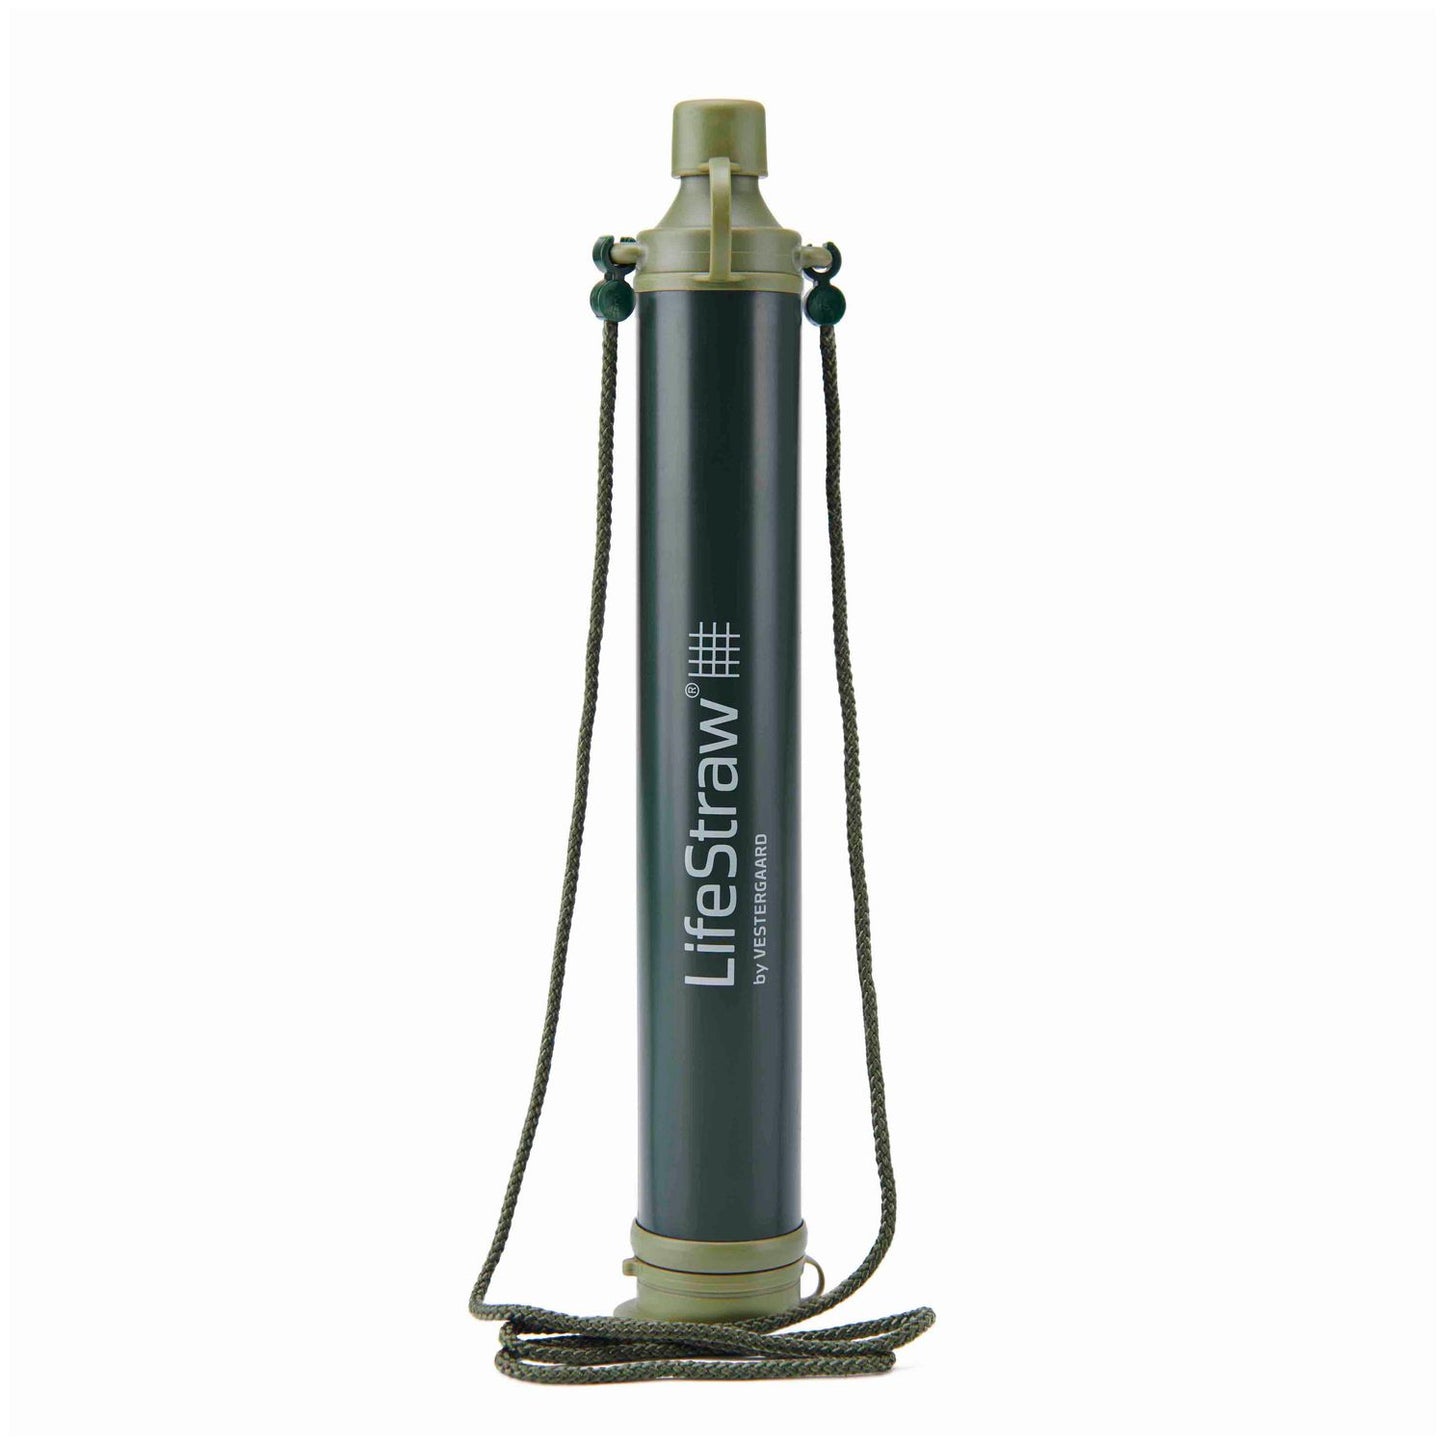 LifeStraw Personal Wasserfilter-Trinkhalm für Outdoor, Wandern versch. Farben